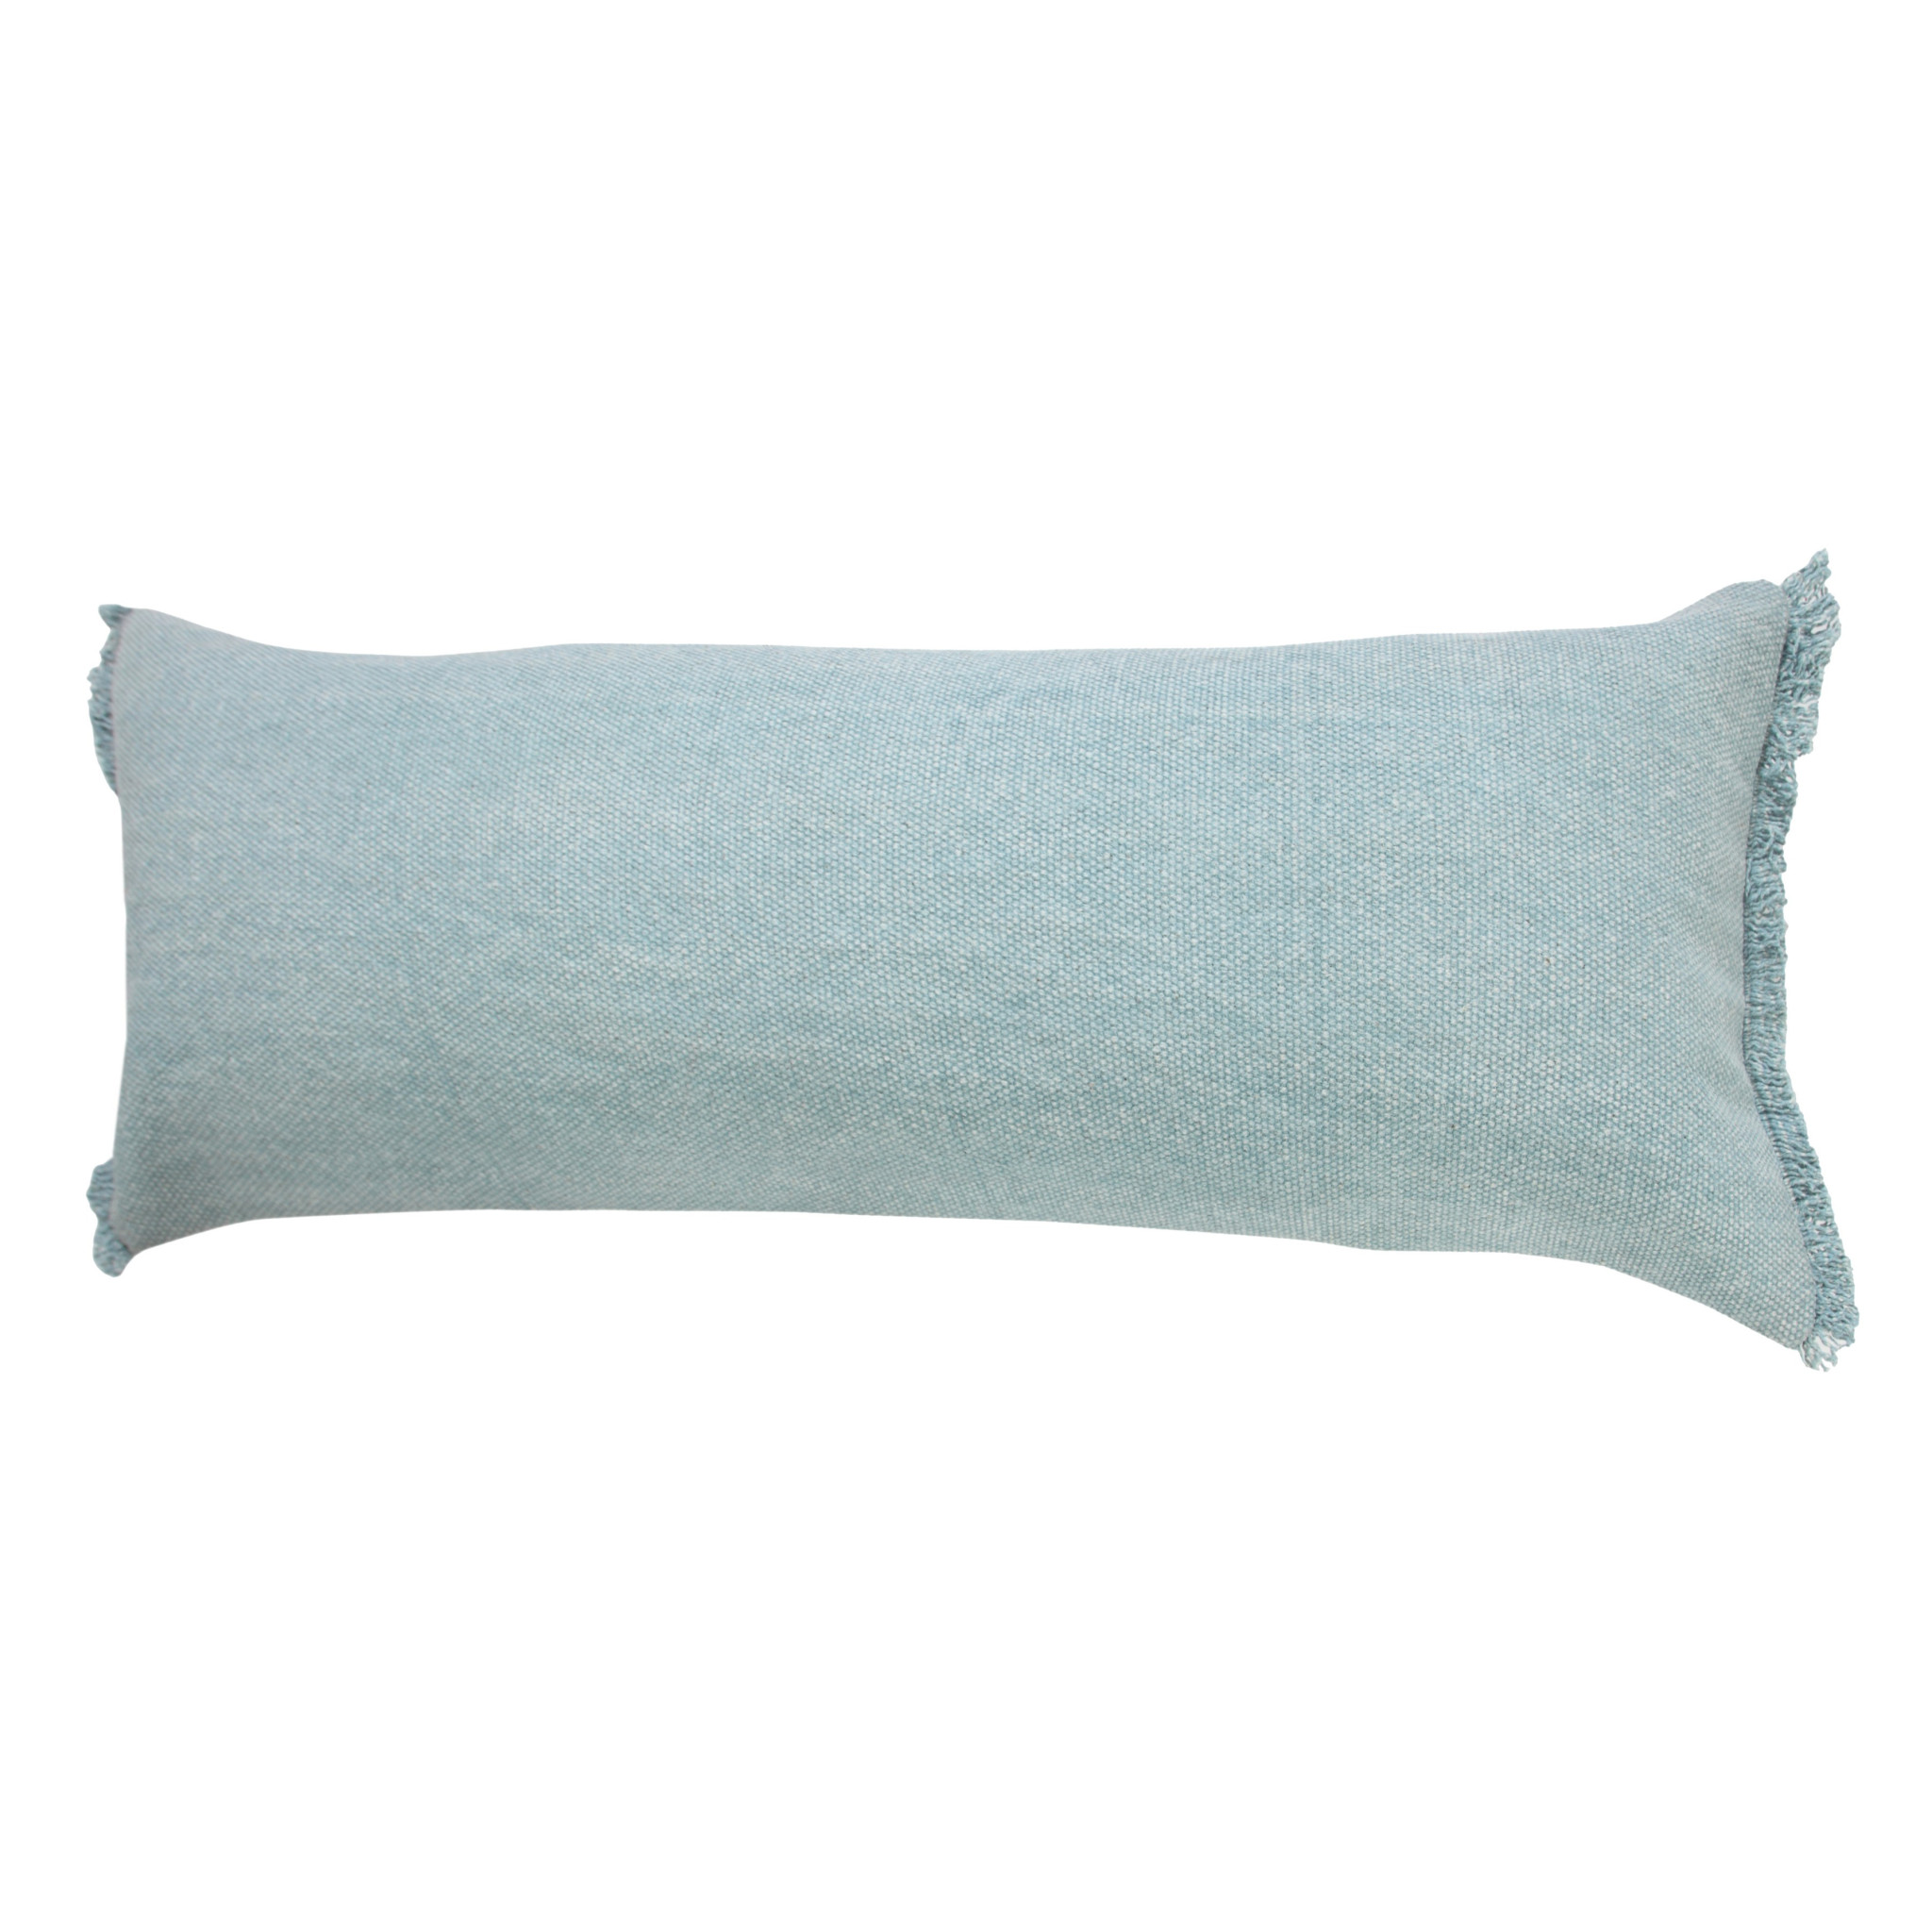 14" X 36" Light Blue 100% Cotton Zippered Pillow-517338-1